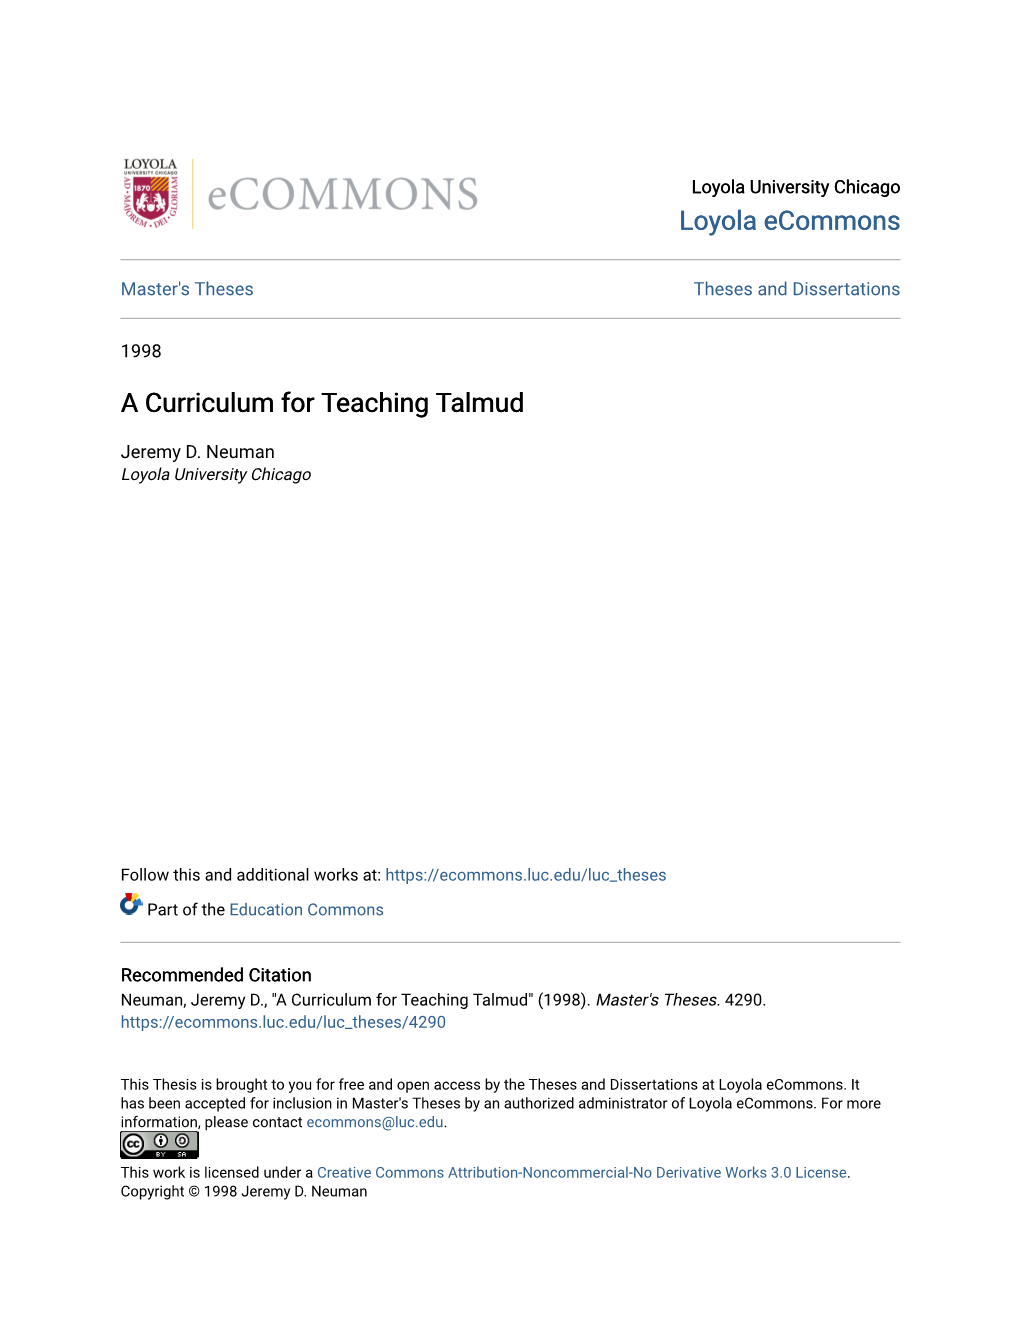 A Curriculum for Teaching Talmud